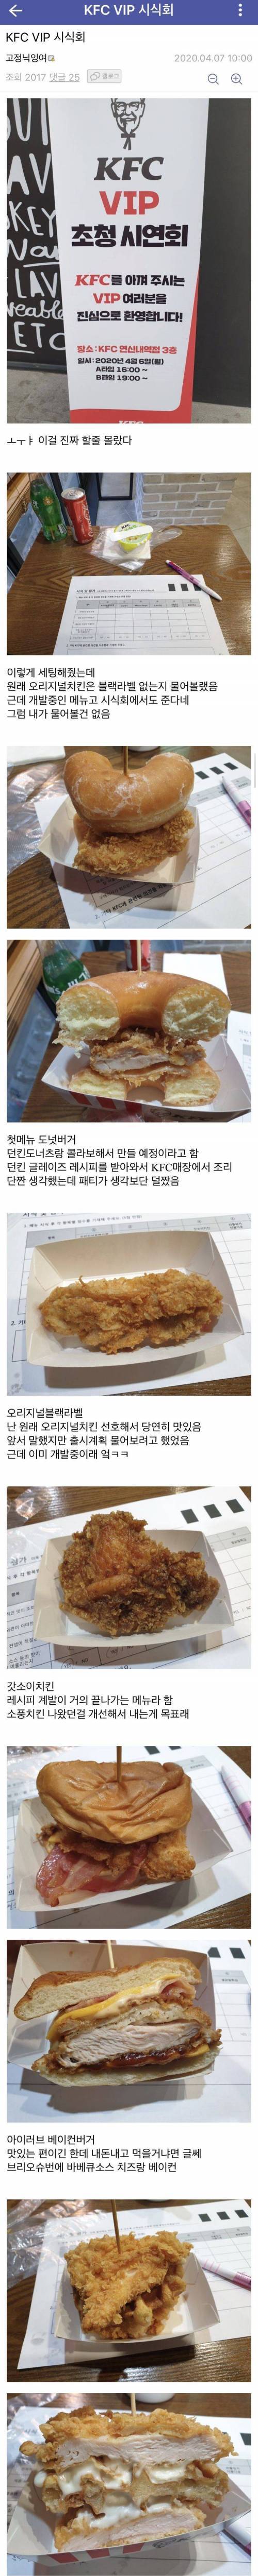 [스압] KFC VIP 시식회.jpg